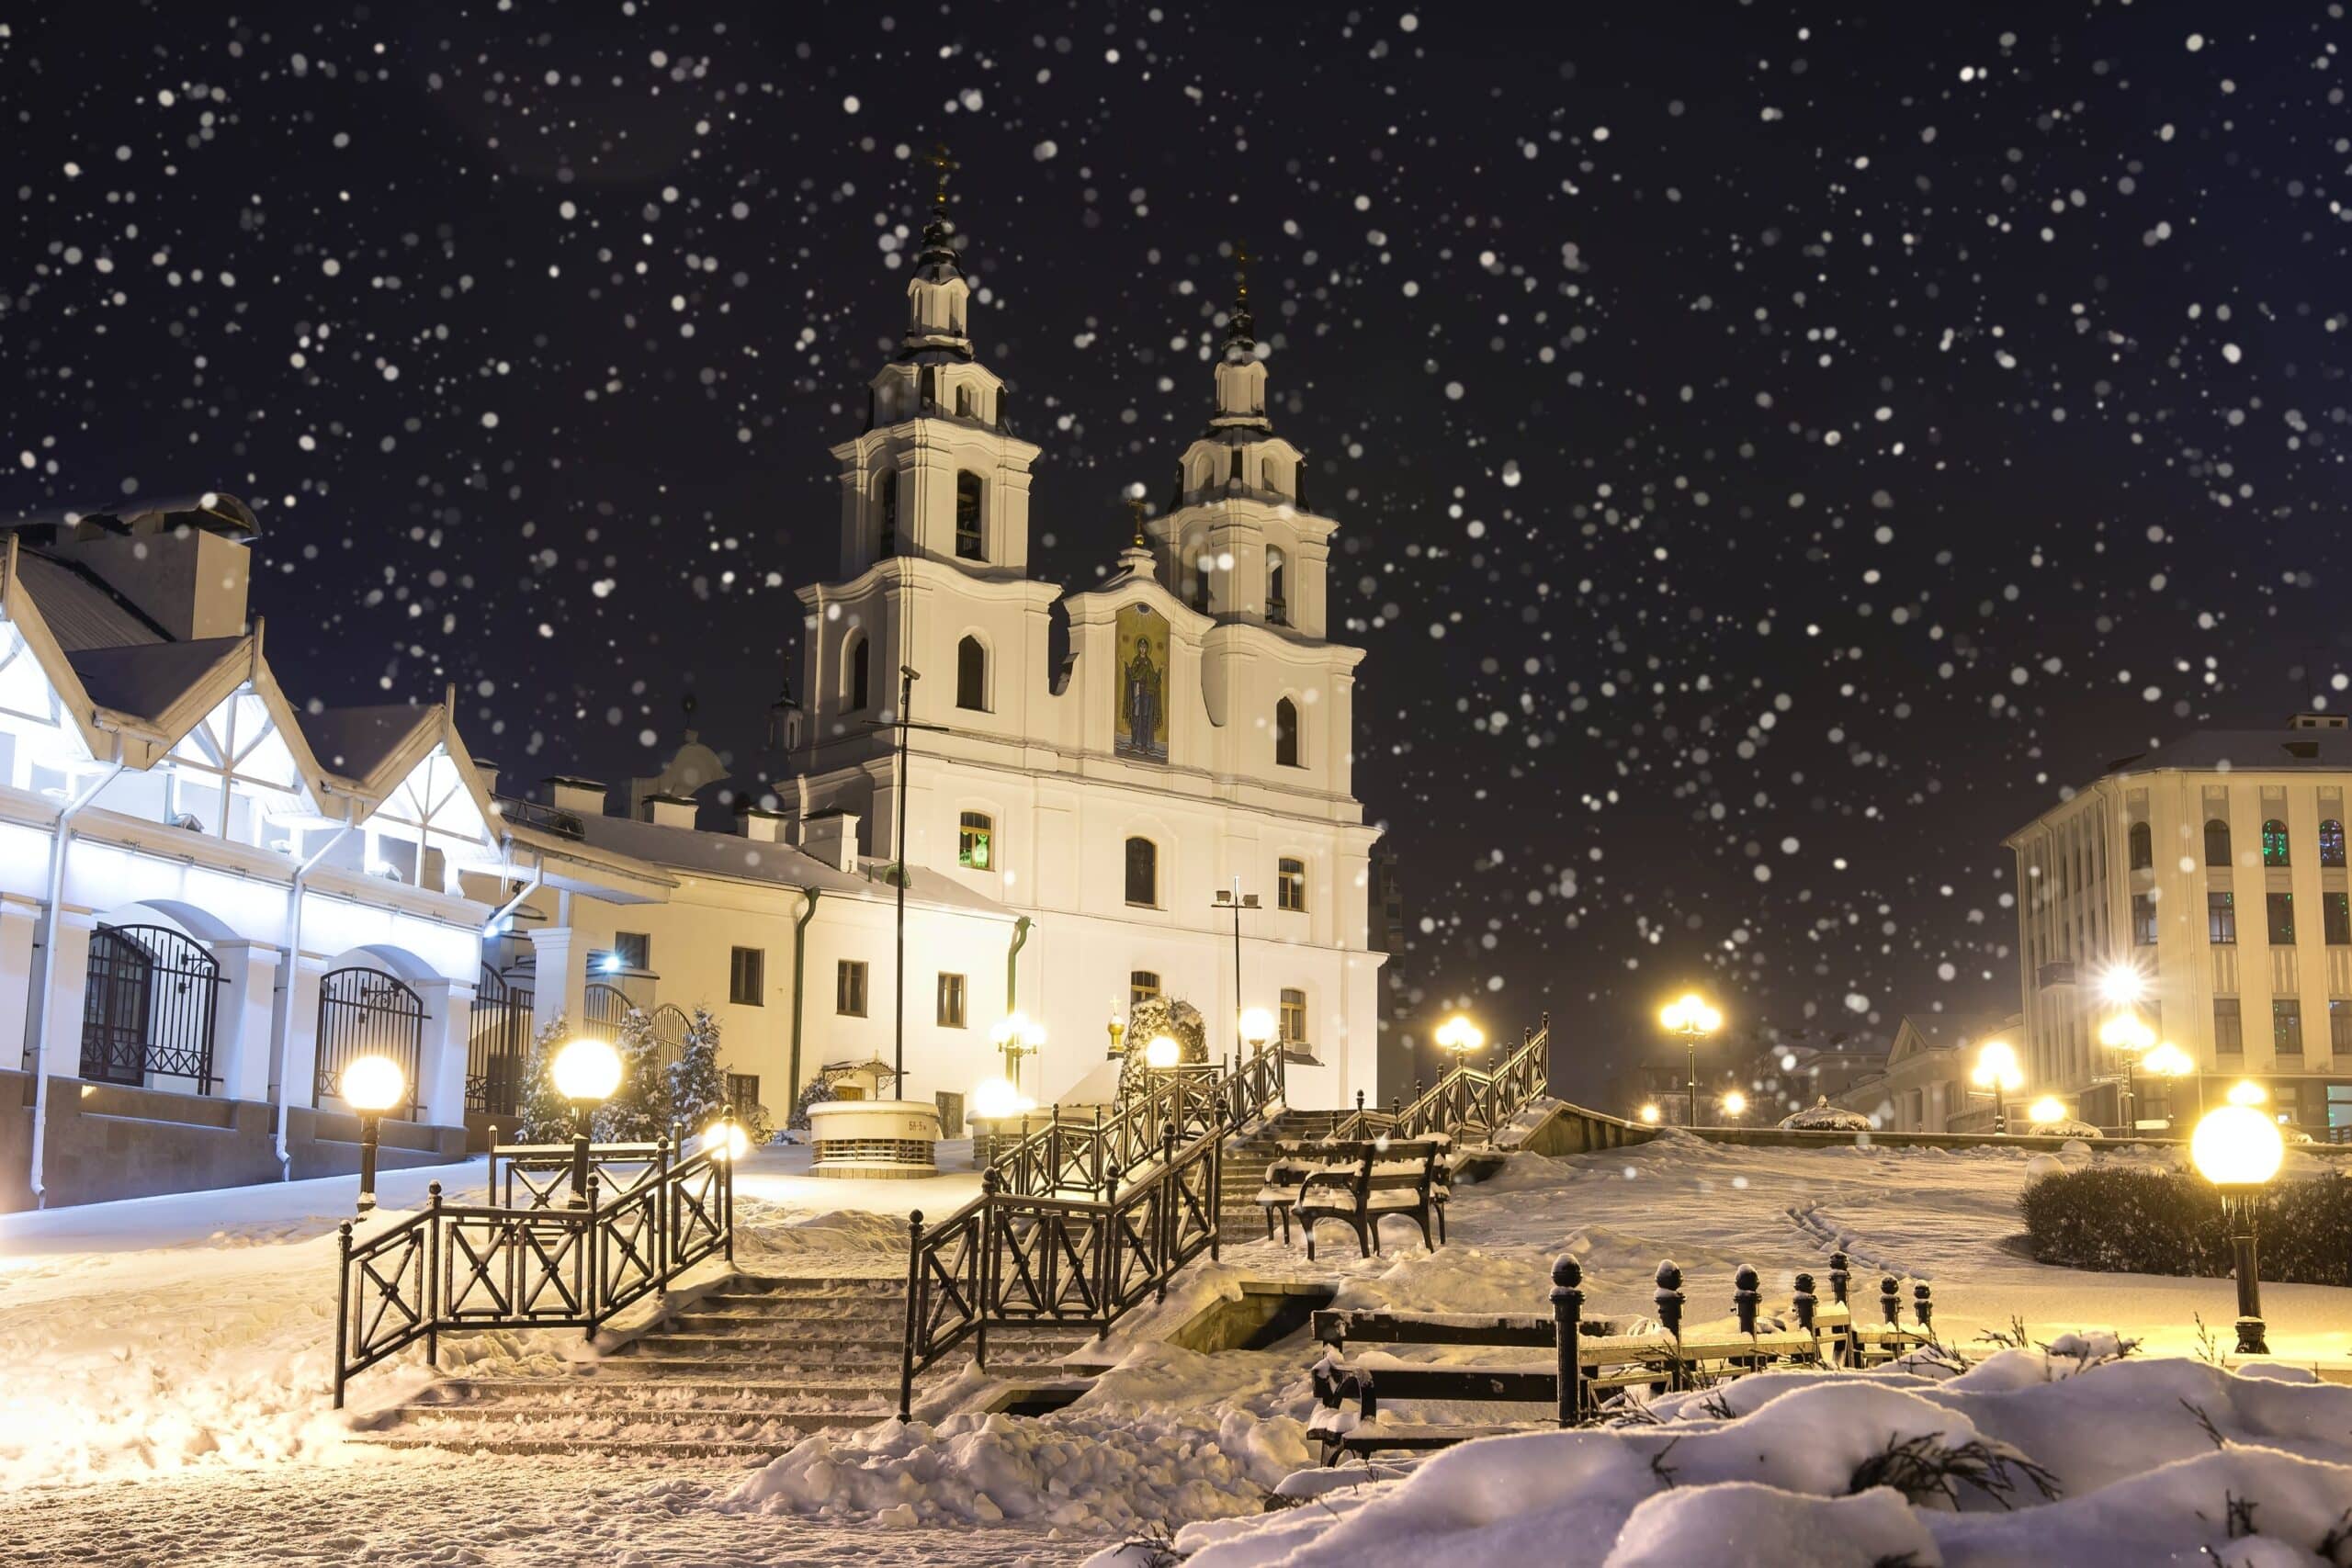 Christmas in Belarus